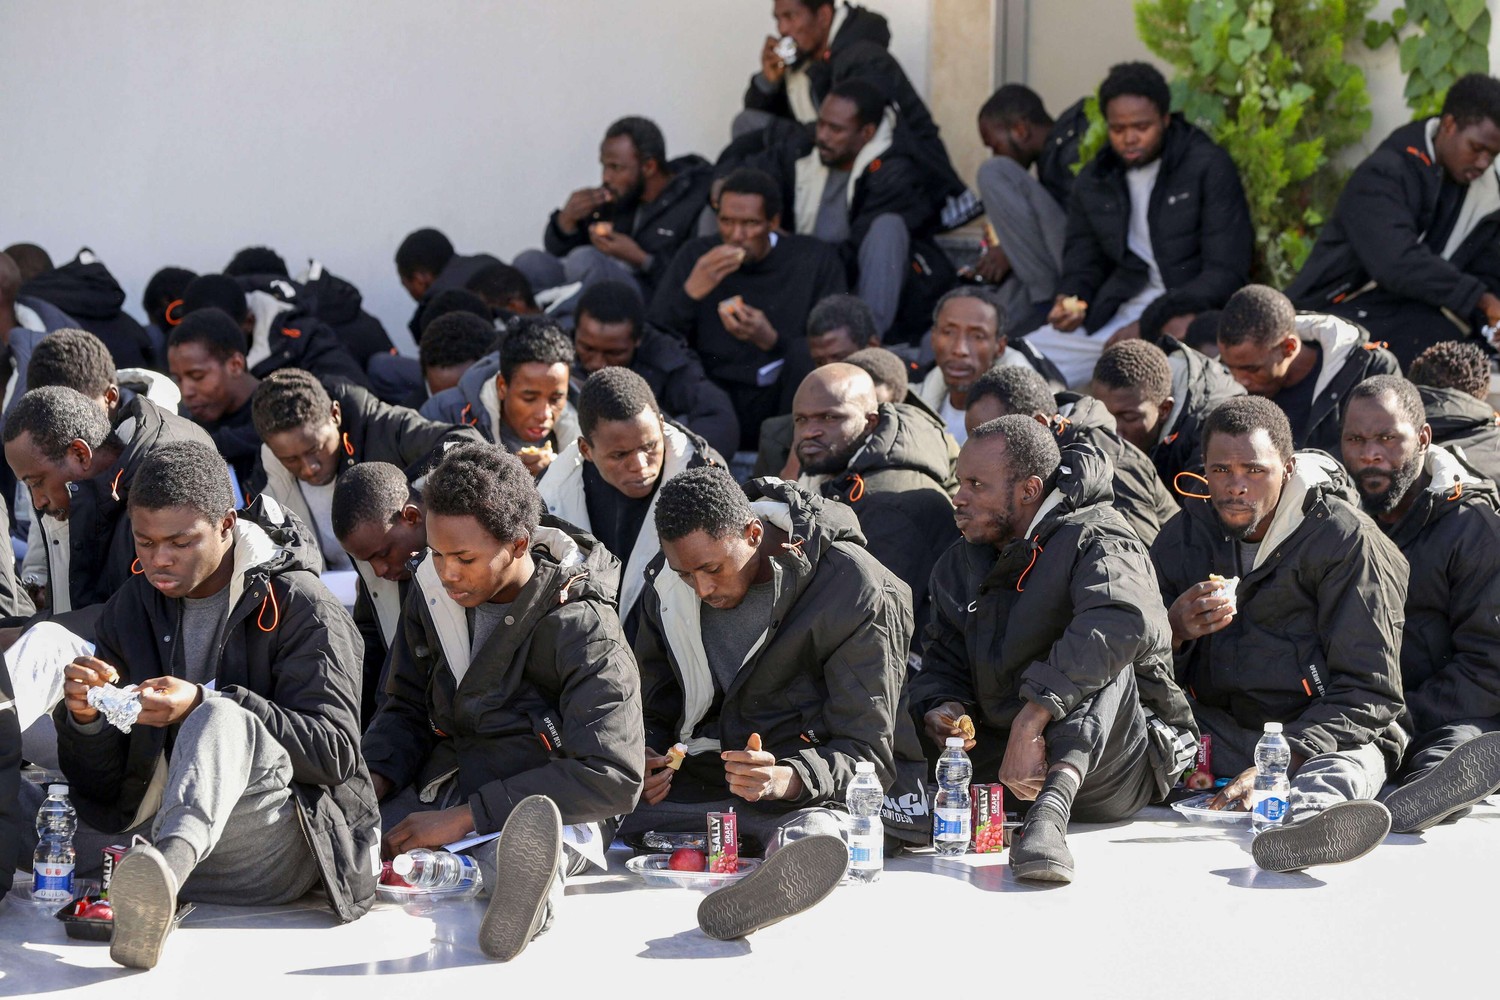 تقييم مدى التزام ليبيا باحترام حقوق الإنسان والمهاجرين